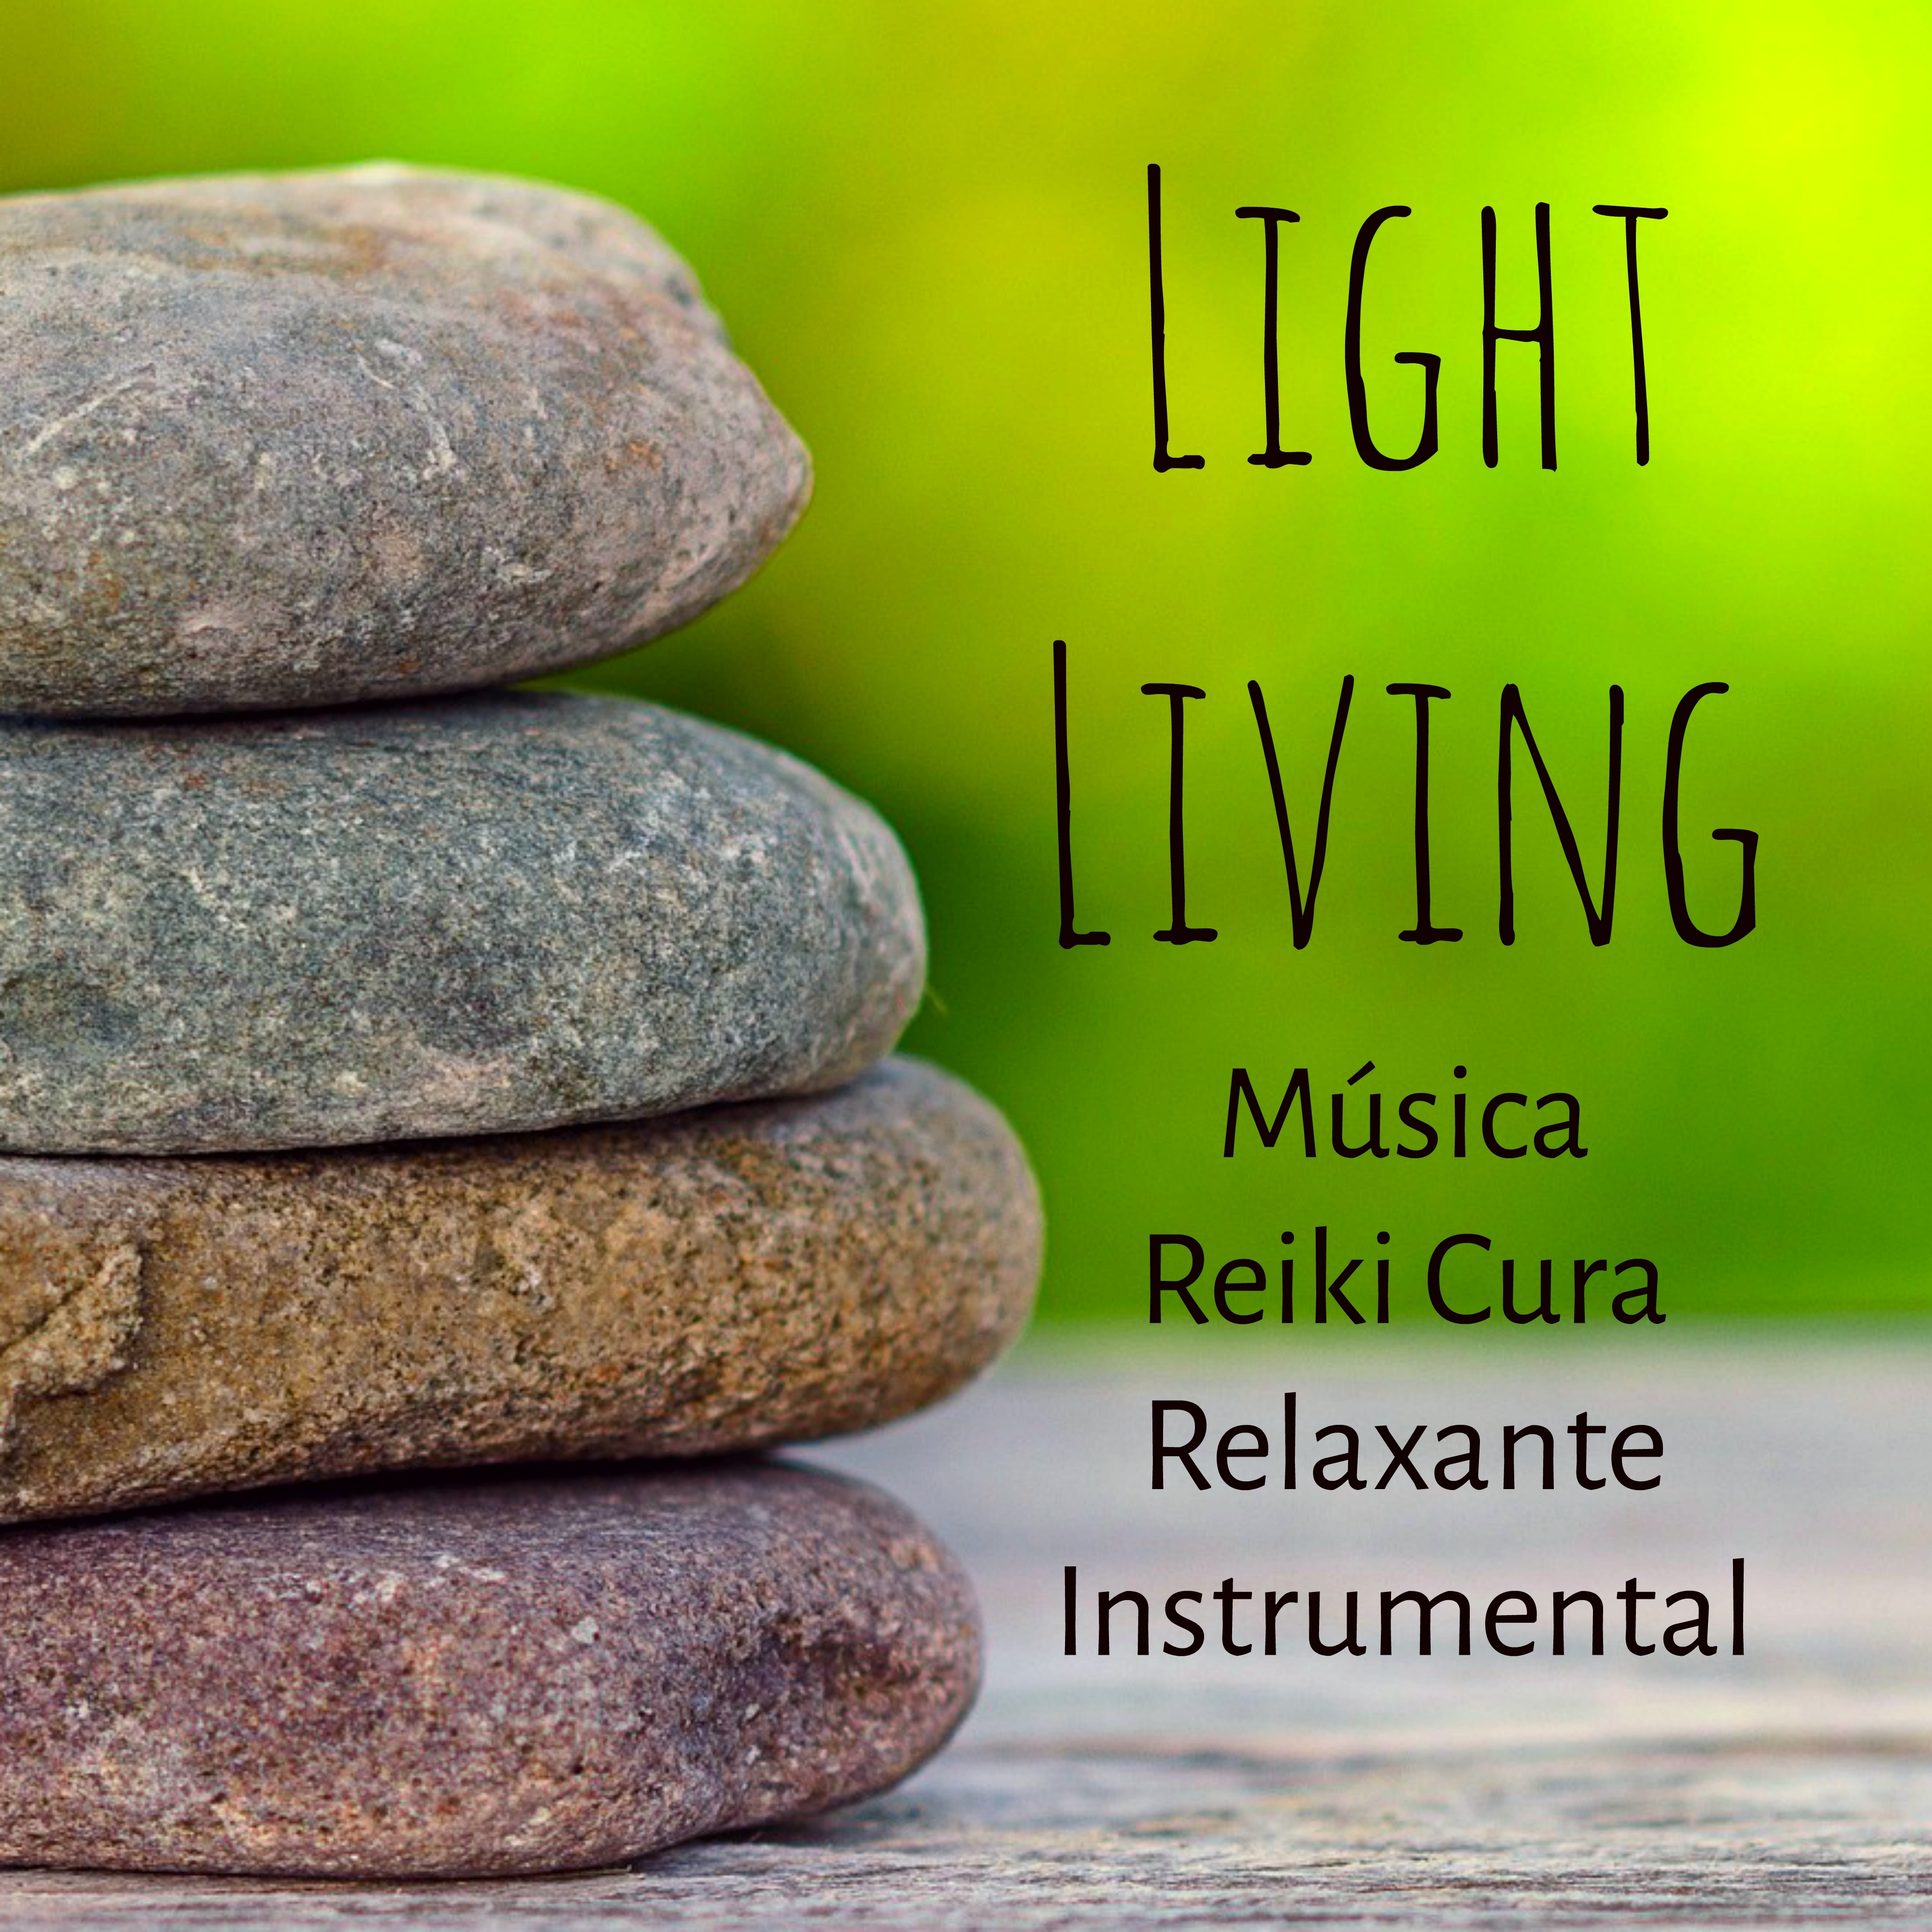 Light Living  Mu sica Reiki Cura Relaxante Instrumental para Retiro Mindfulness Paz Interior Chakras do Corpo com Sons da Natureza Binaurais New Age